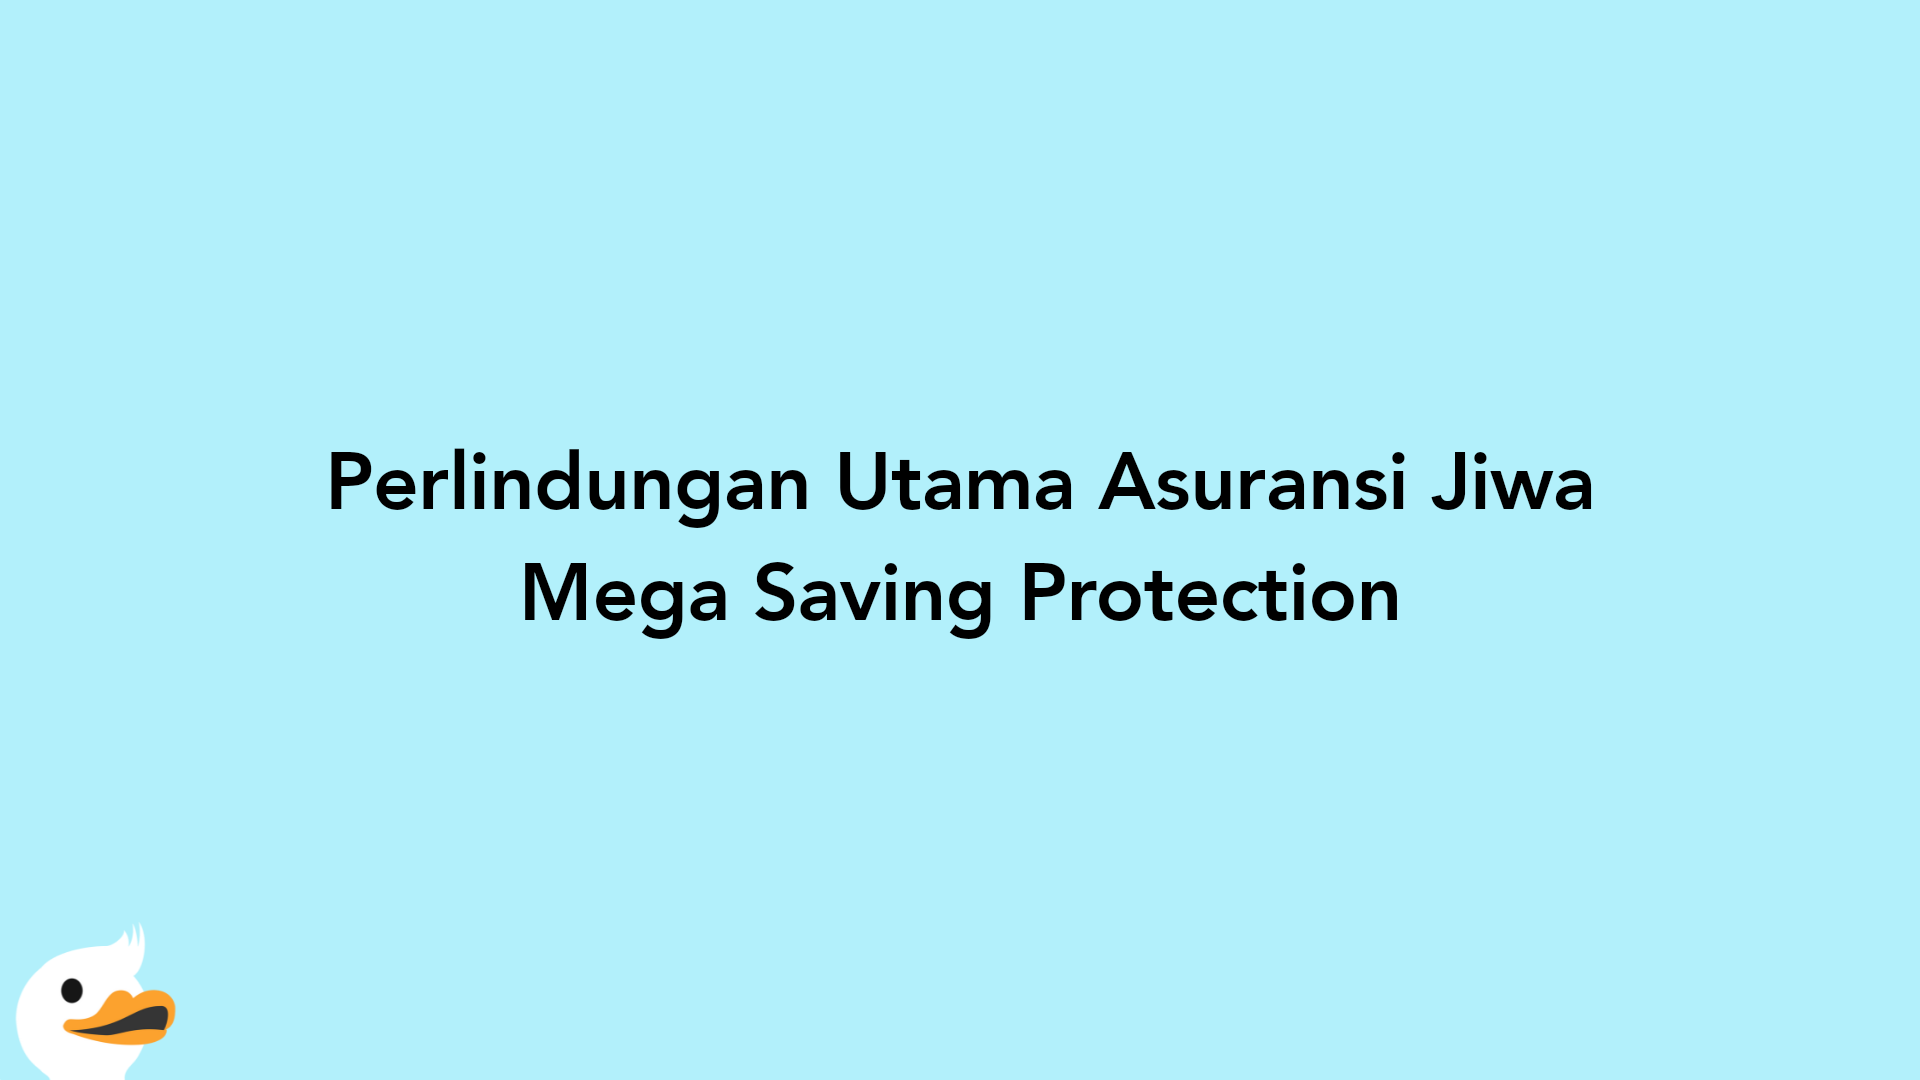 Perlindungan Utama Asuransi Jiwa Mega Saving Protection